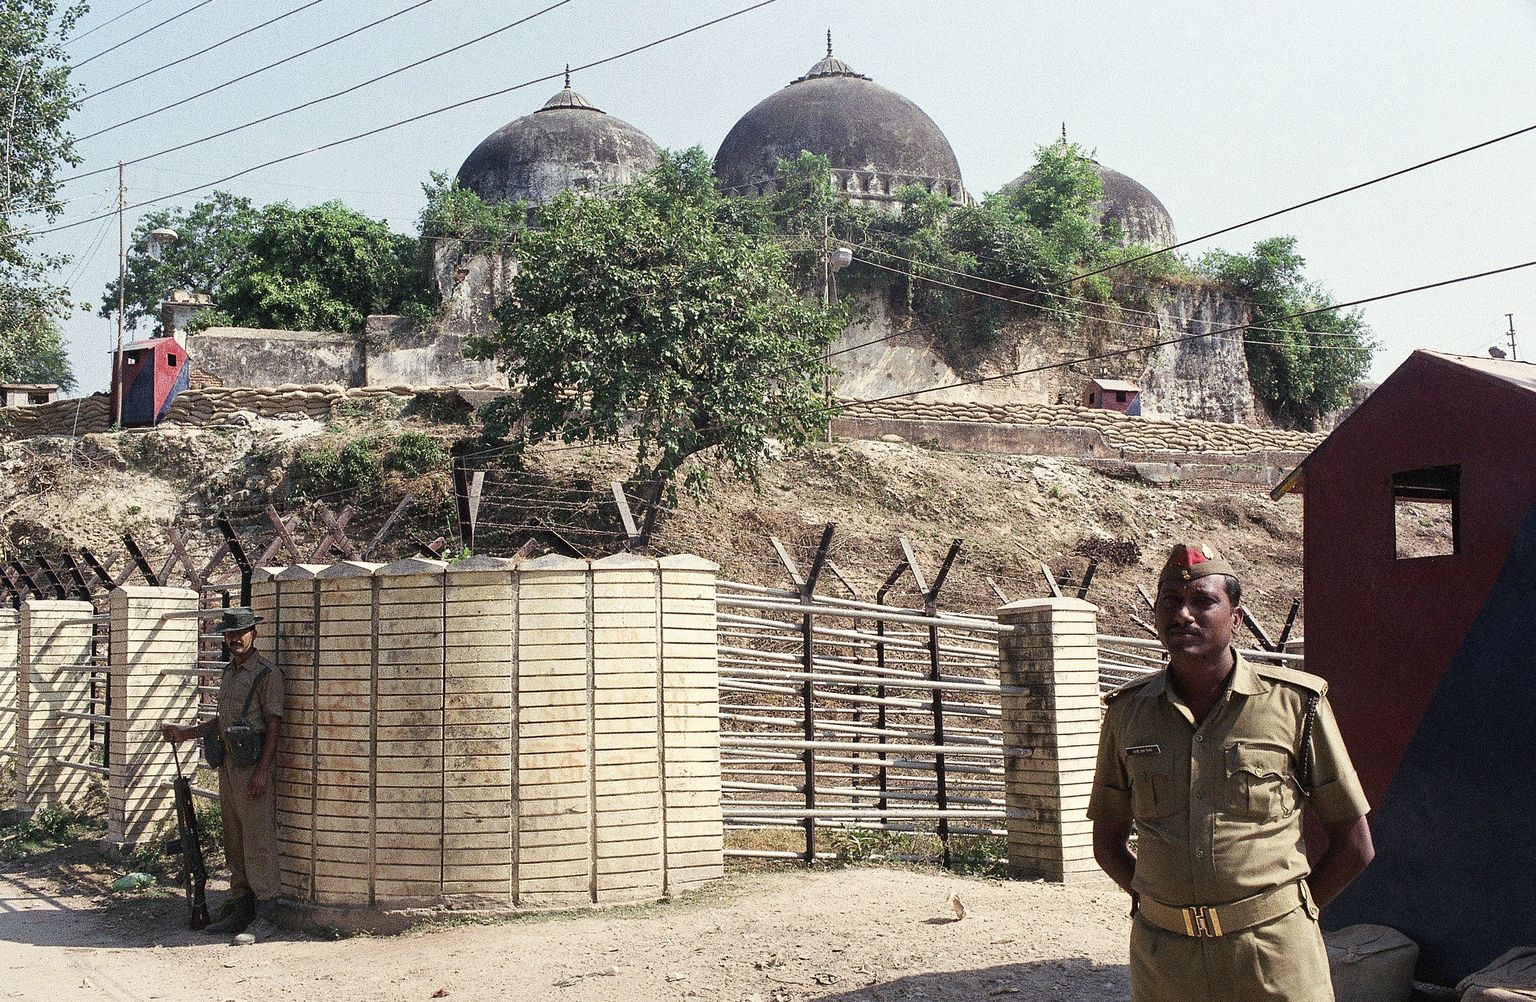 India julgeolekutöötaja valvamas Ayodhyas Babri mošeed. Pühamu hävitamine 1992. aastal vallandas usuvägivalla.